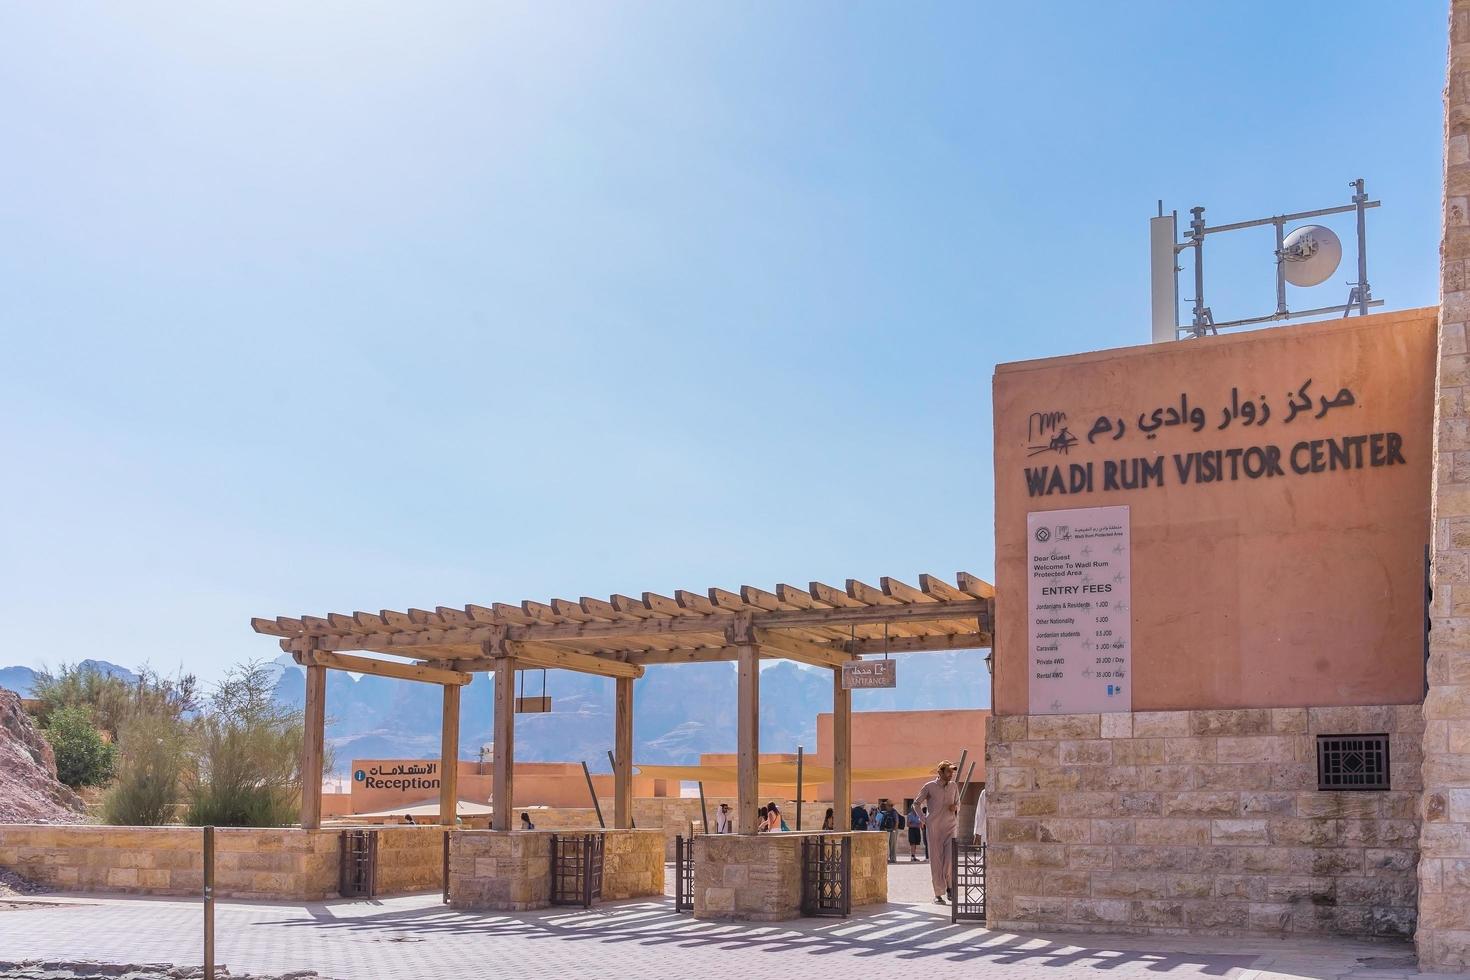 bezoekerscentrum van wadi rum, Jordanië, 2018 foto